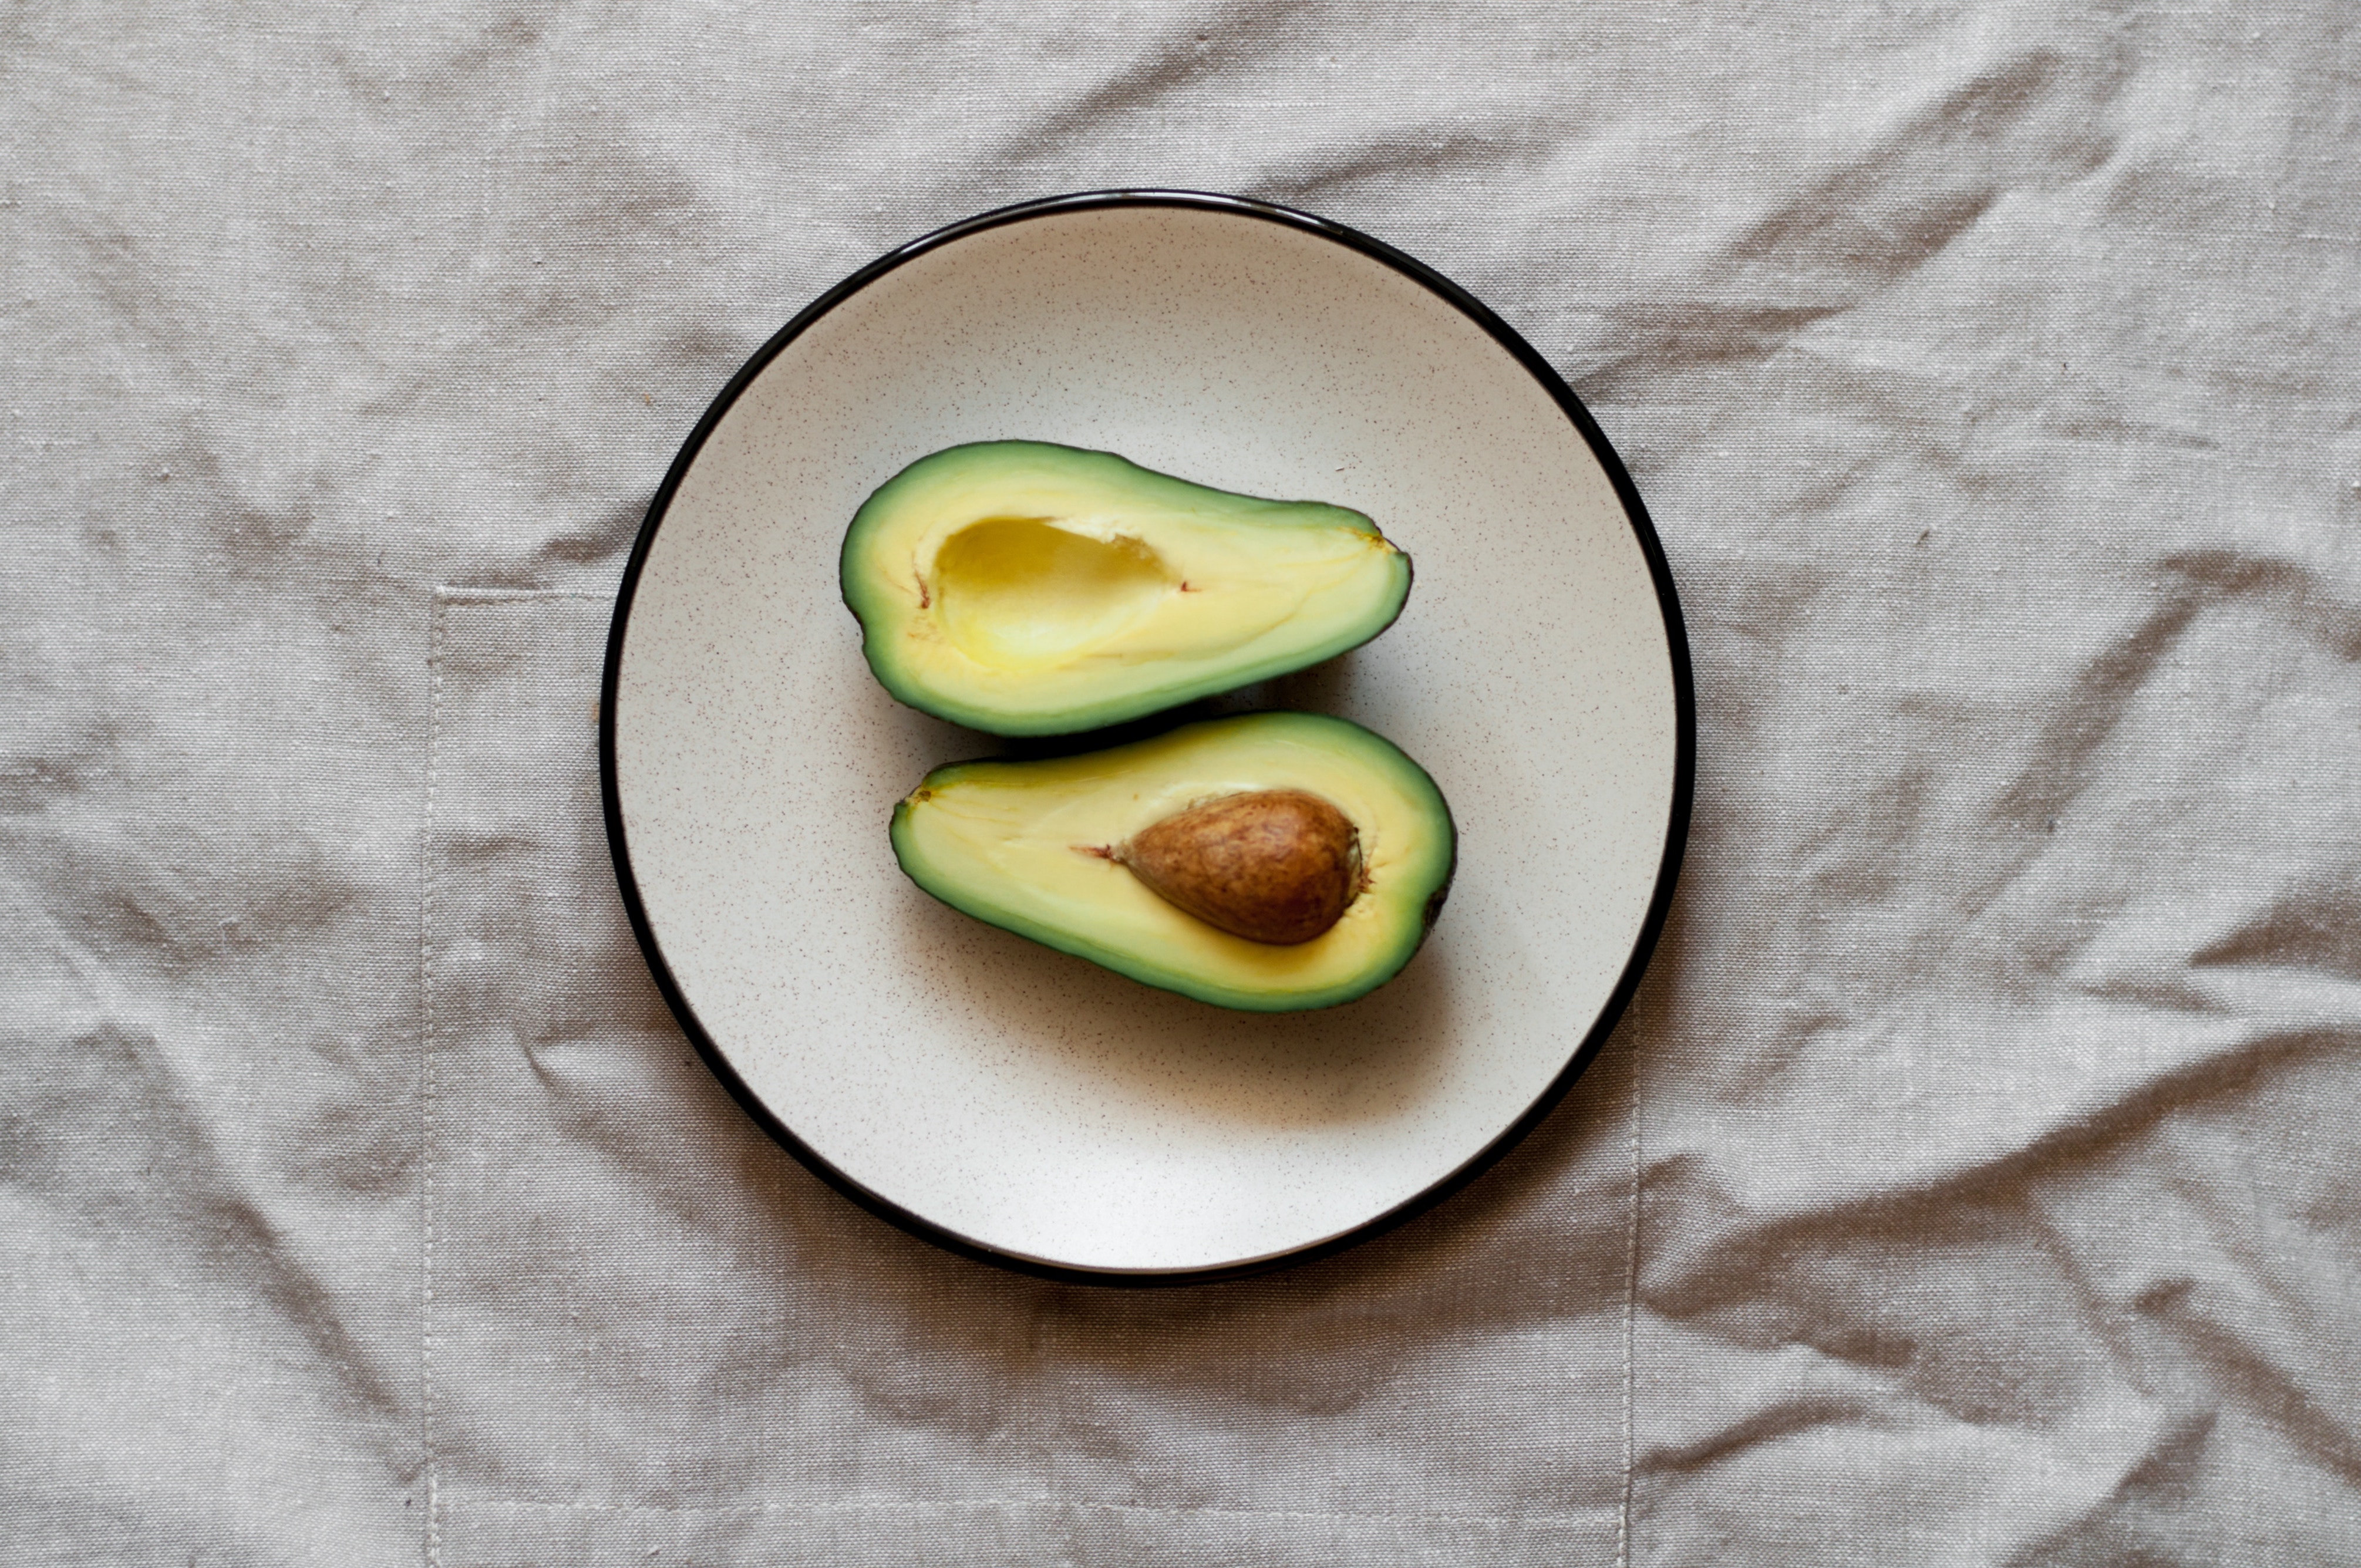 Avocado contains essential fatty acids 